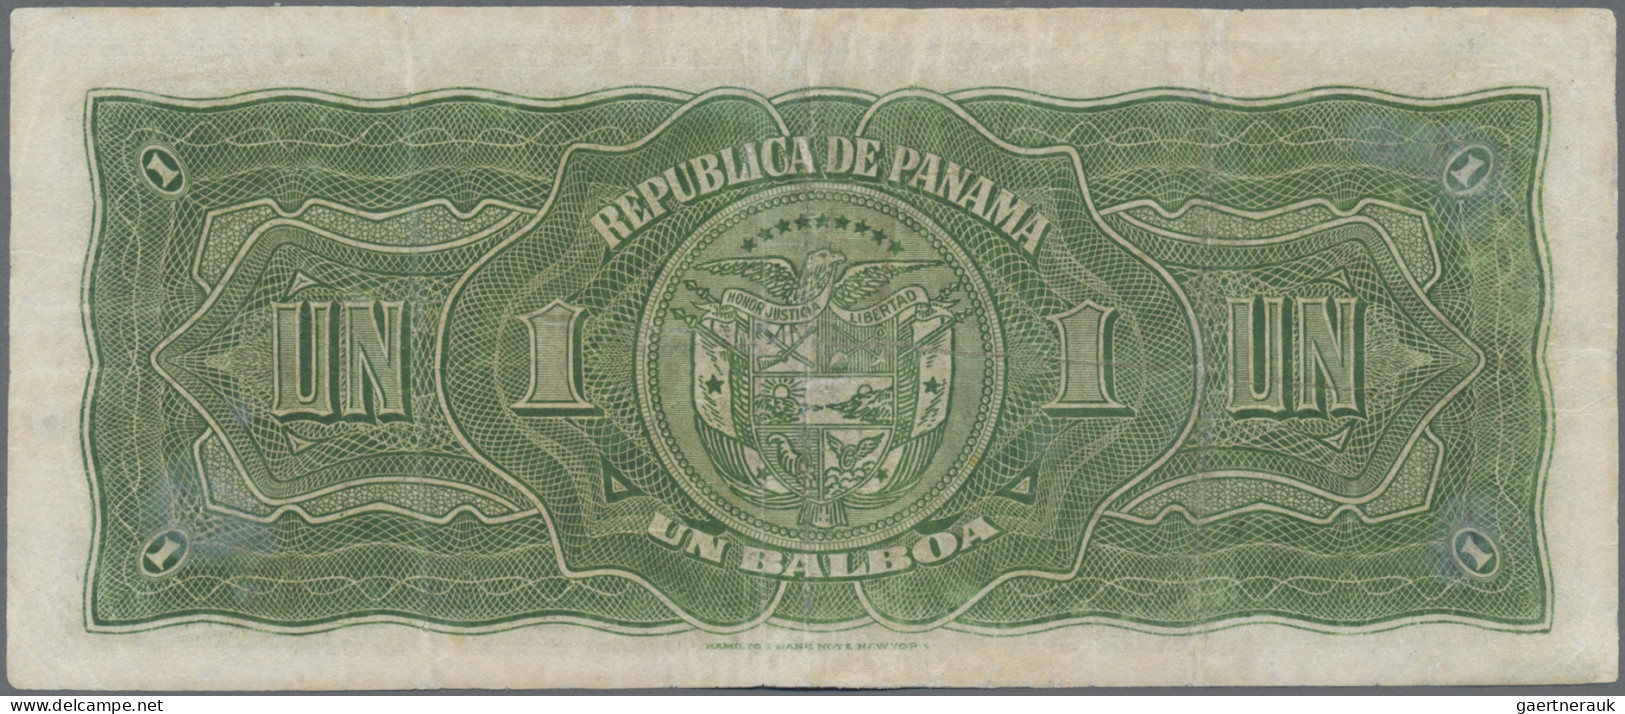 Panama: Banco Central De Emisión De La República De Panamá, 1 Balboa 1941, P.22, - Panamá